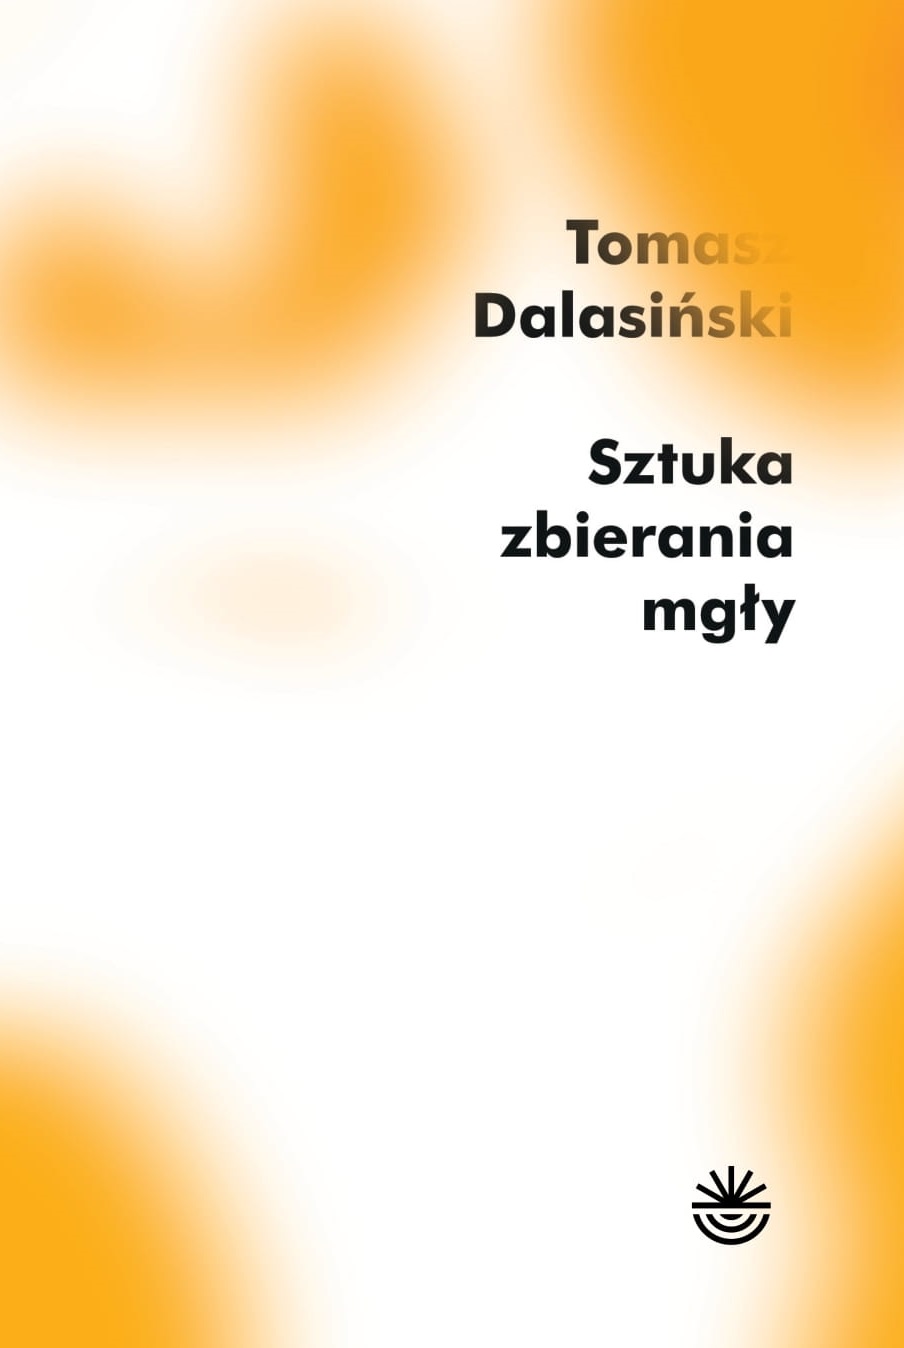 okładka książki Tomasza Dalasińskiego: Sztuka zbierania mgły